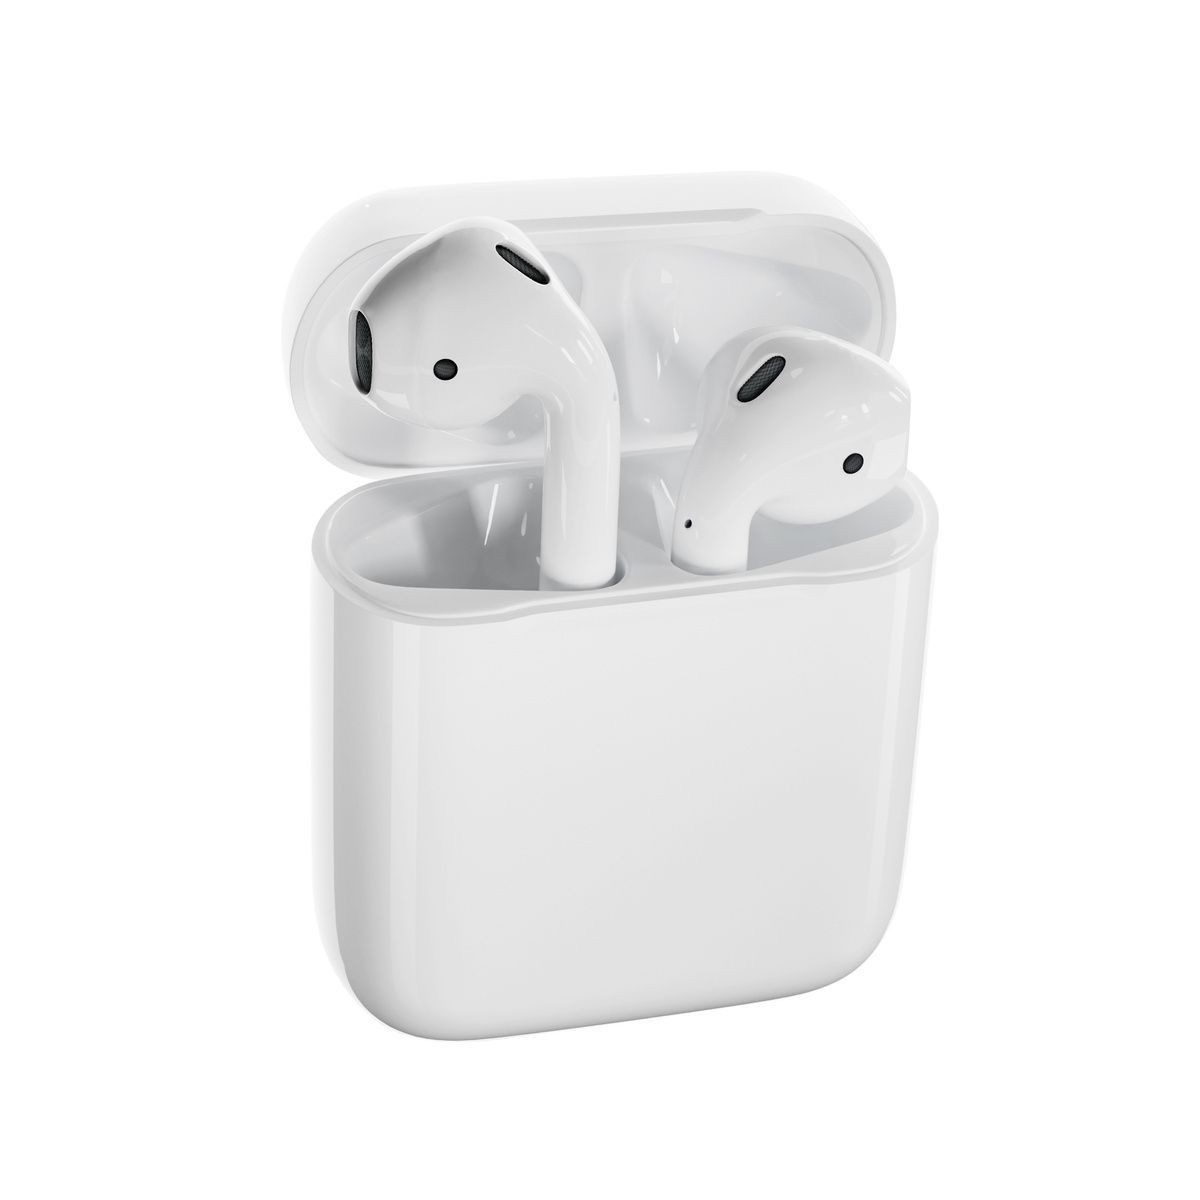 苹果(Apple) airpods2代真无线蓝牙耳机【有线充电盒